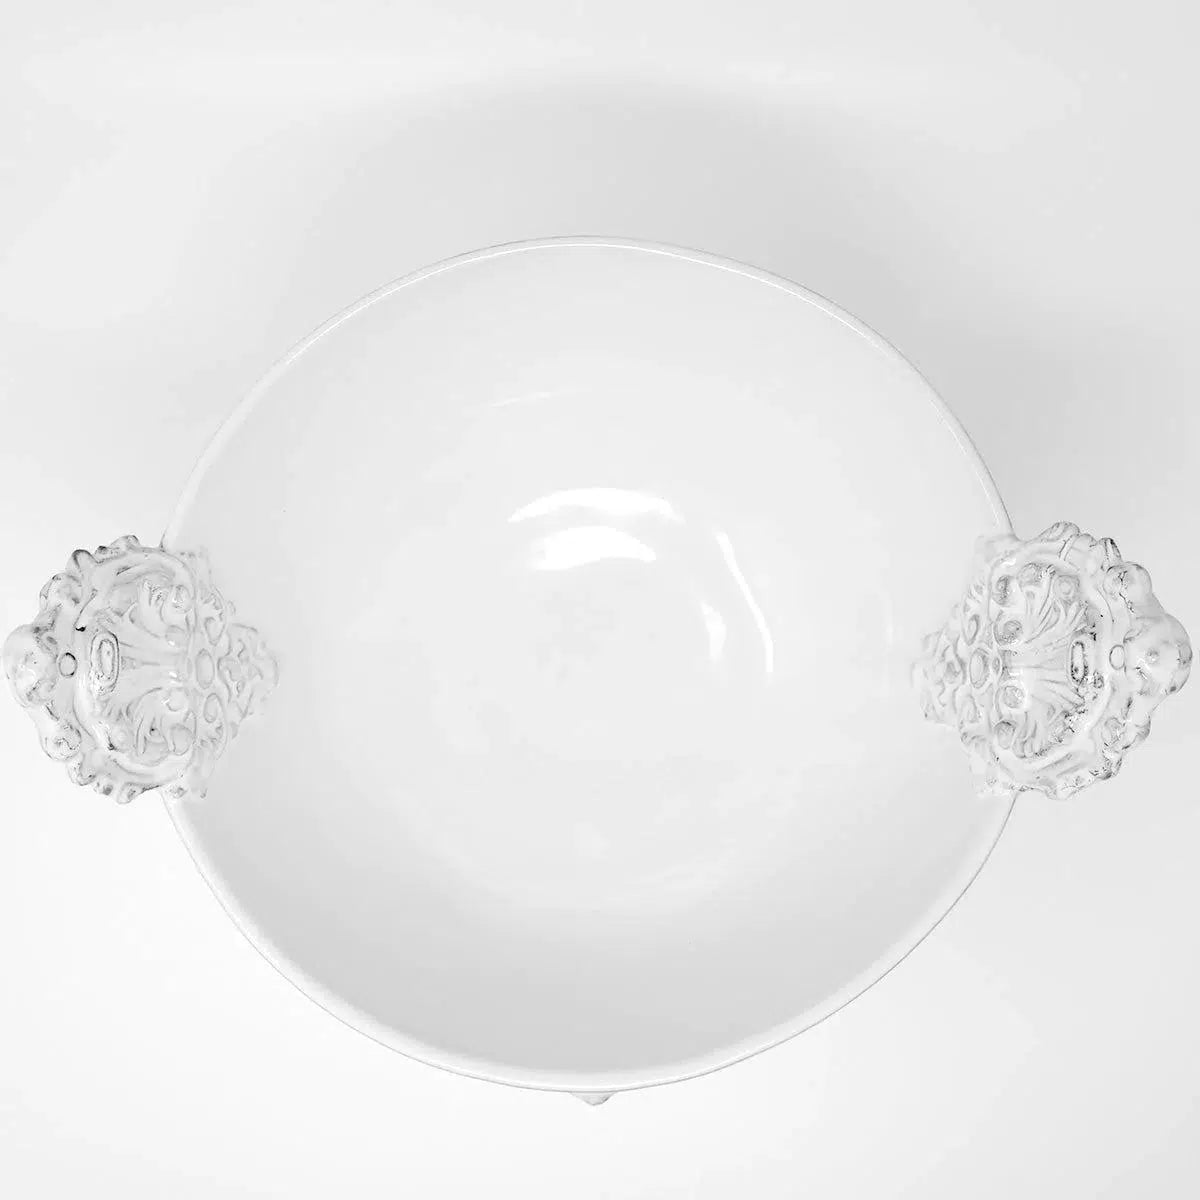 Mon Jules serving bowl with handle-33x33x18cm-CARRON-Paris